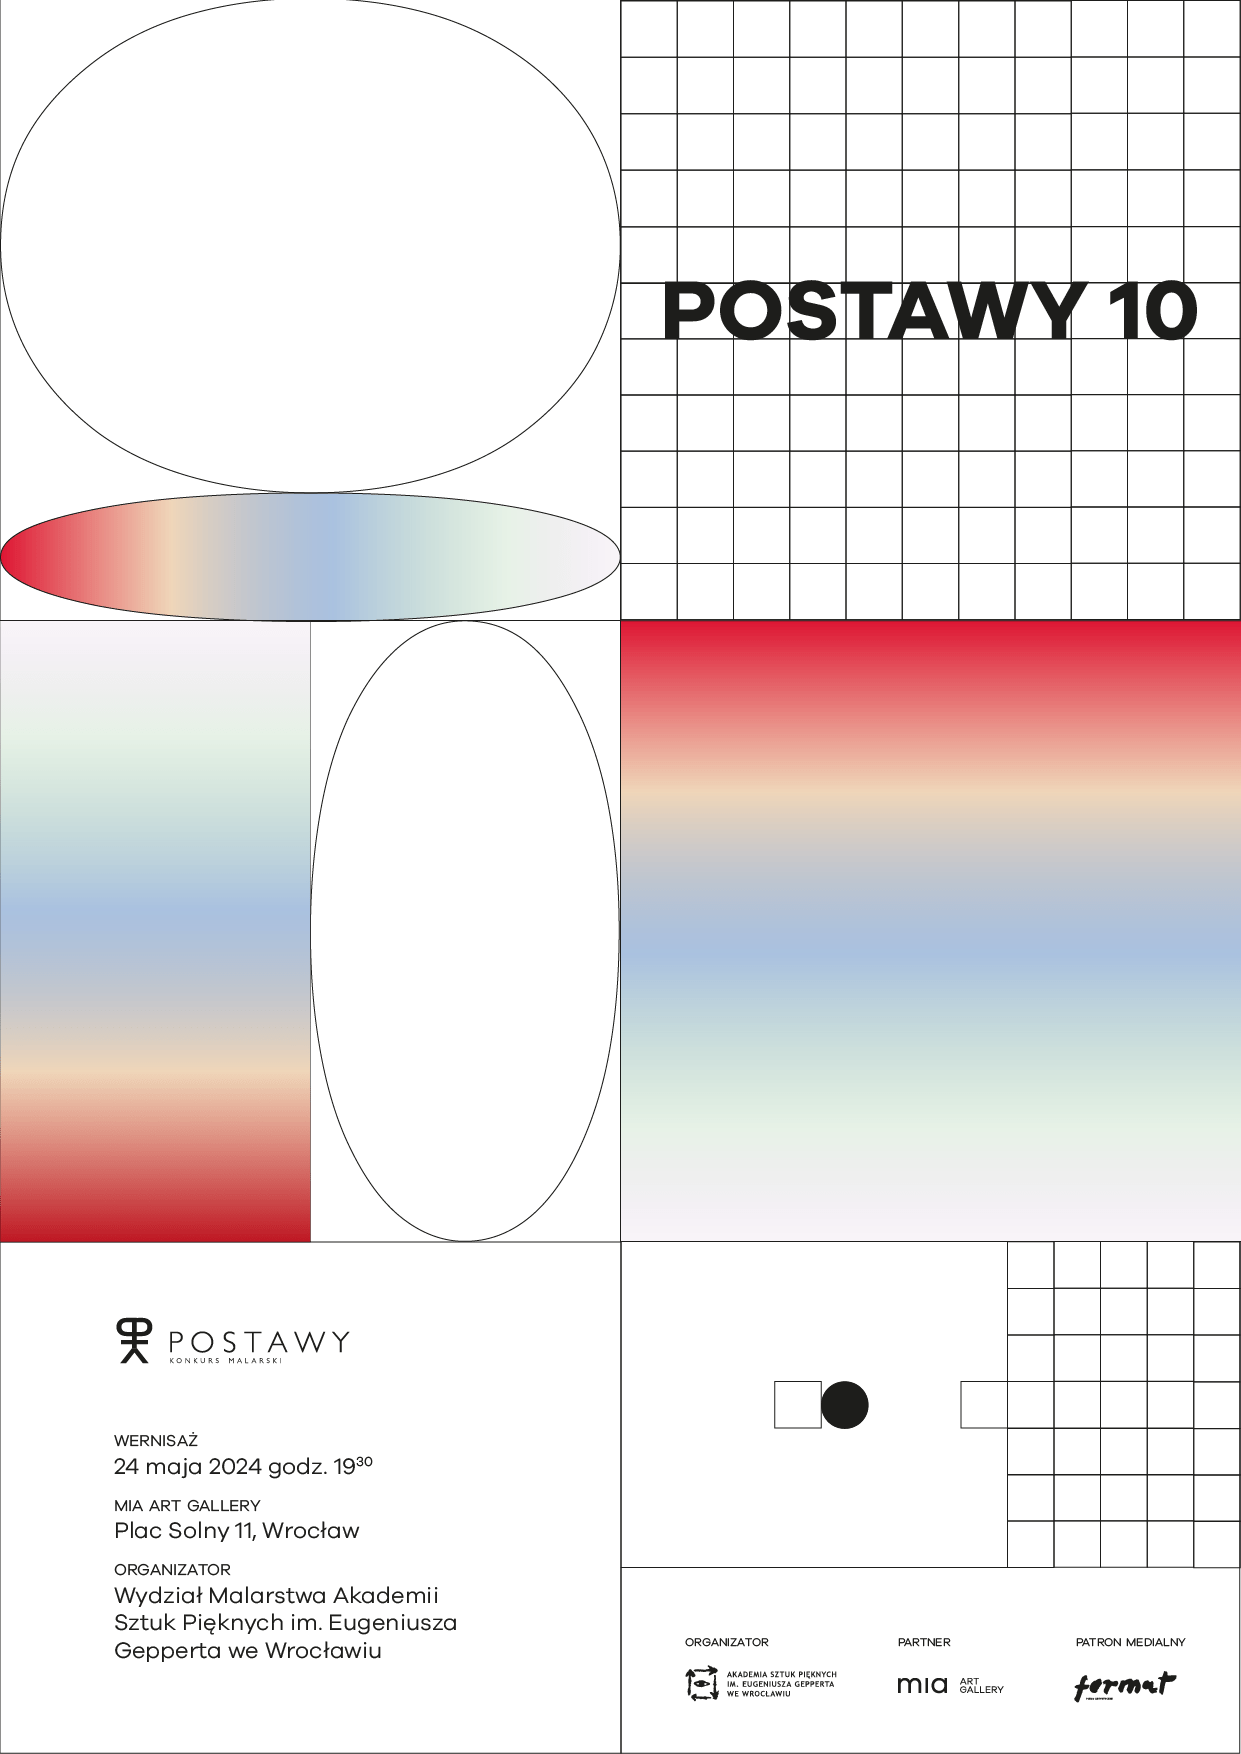 POSTAWY X